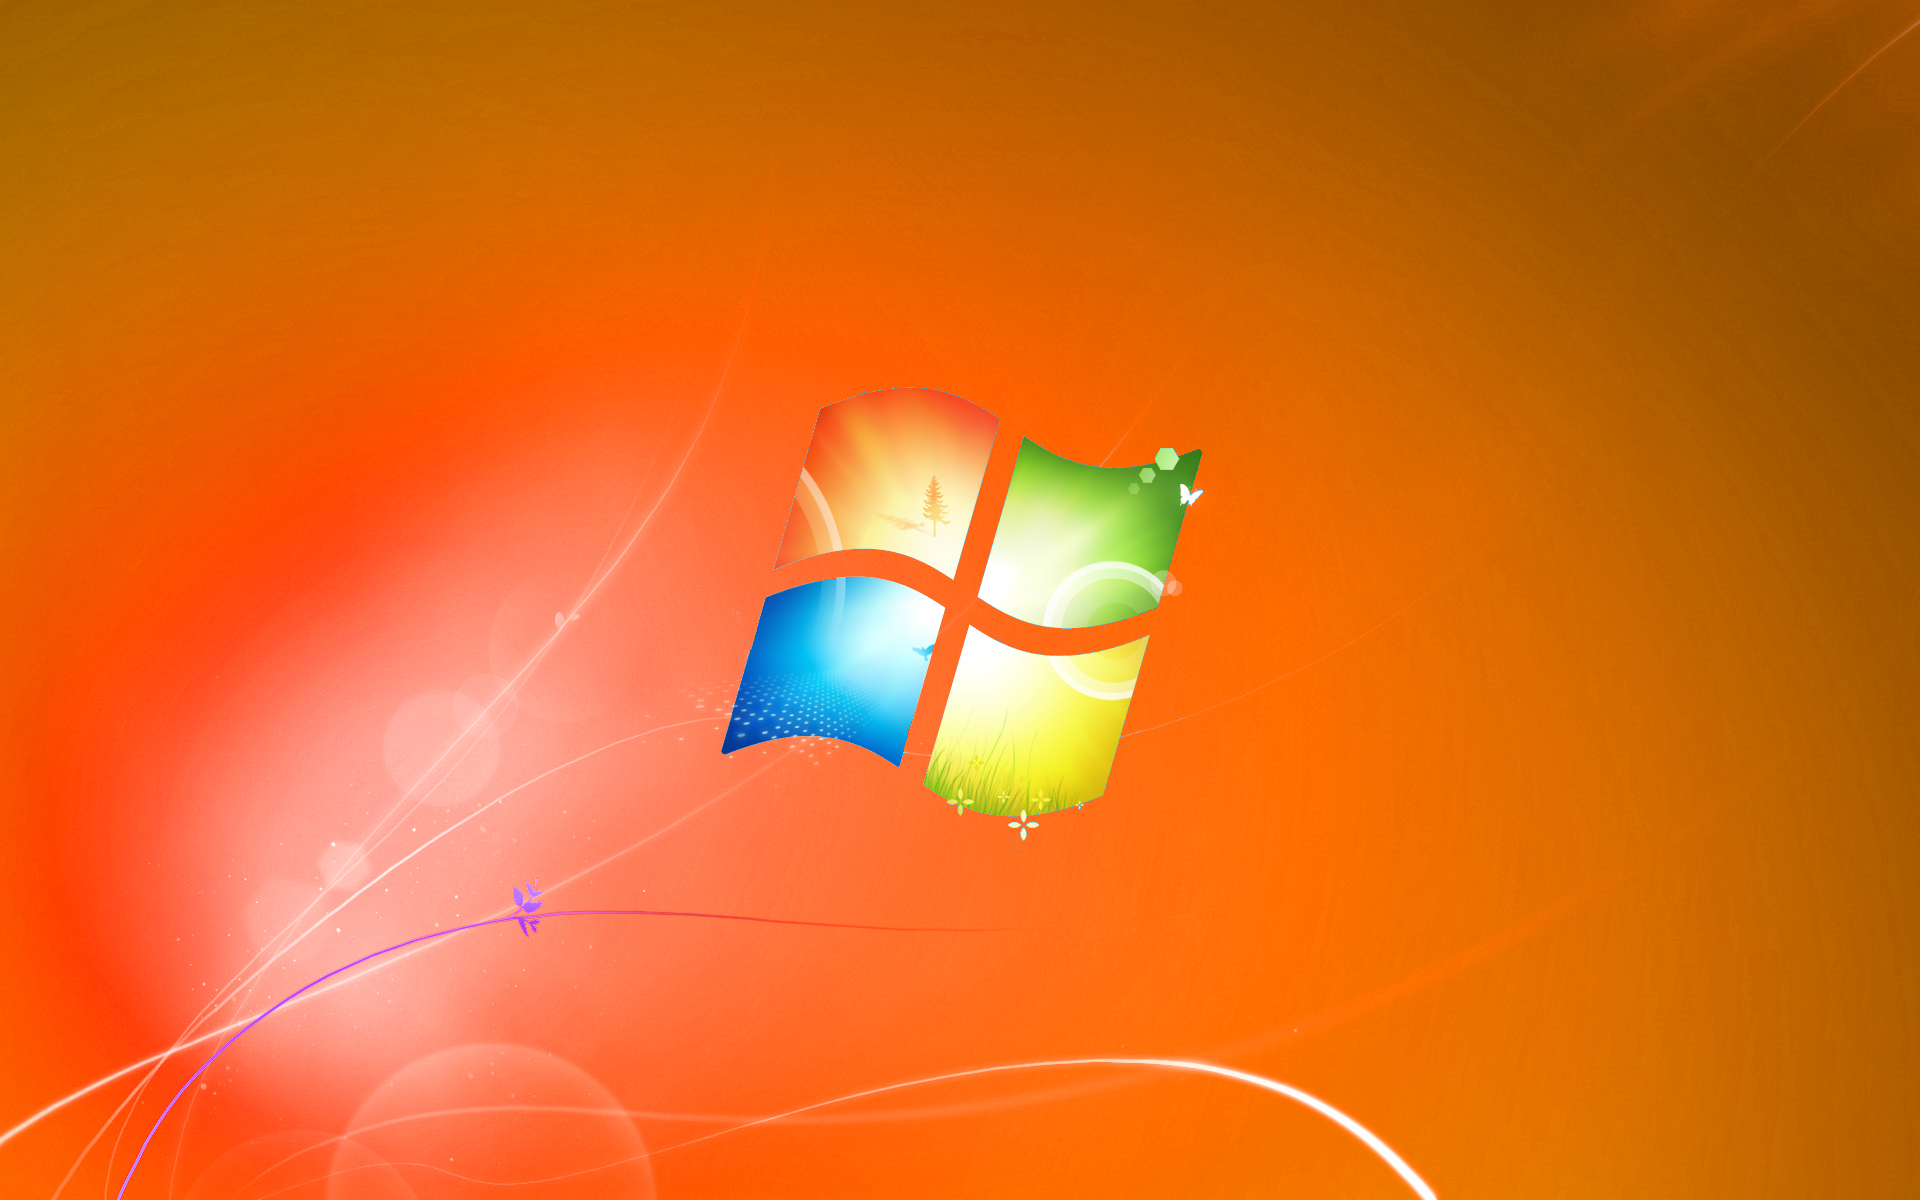 Windows 7 Default Wallpaper Orange Version by dominichulme on DeviantArt